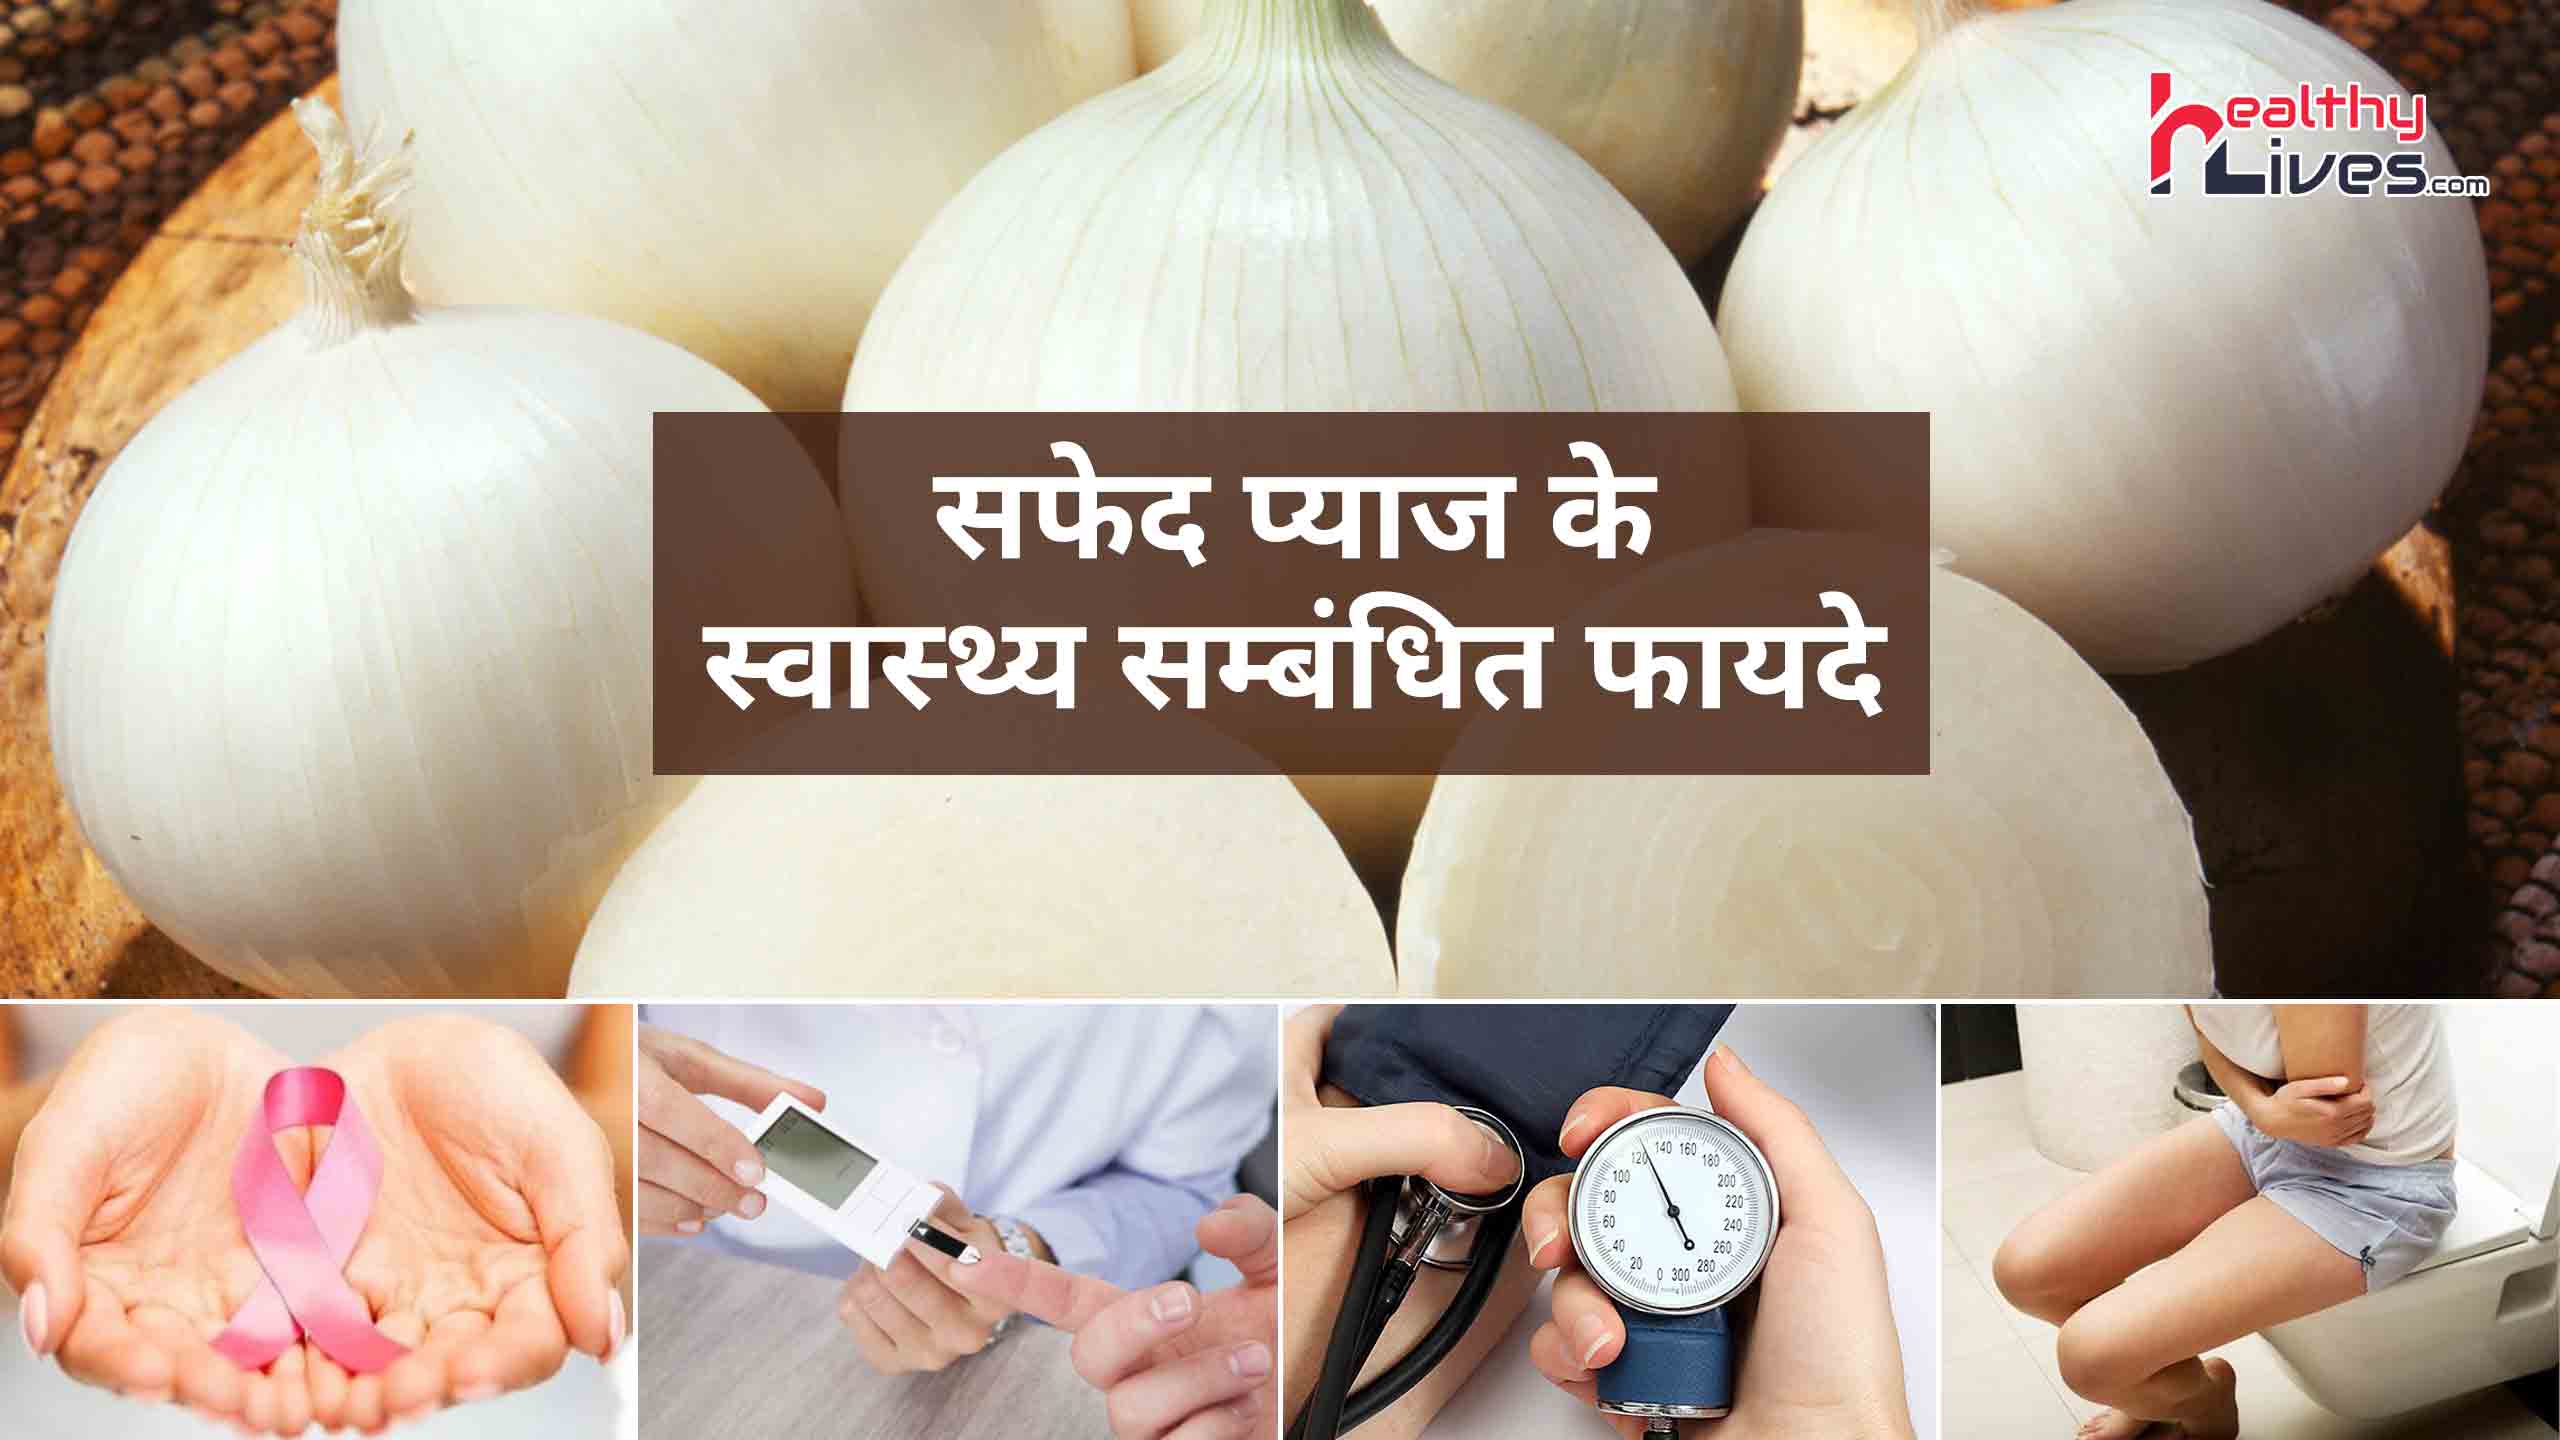 White Onion Benefits: सफ़ेद प्याज़ के होते हैं चौका देने वाले फायदे